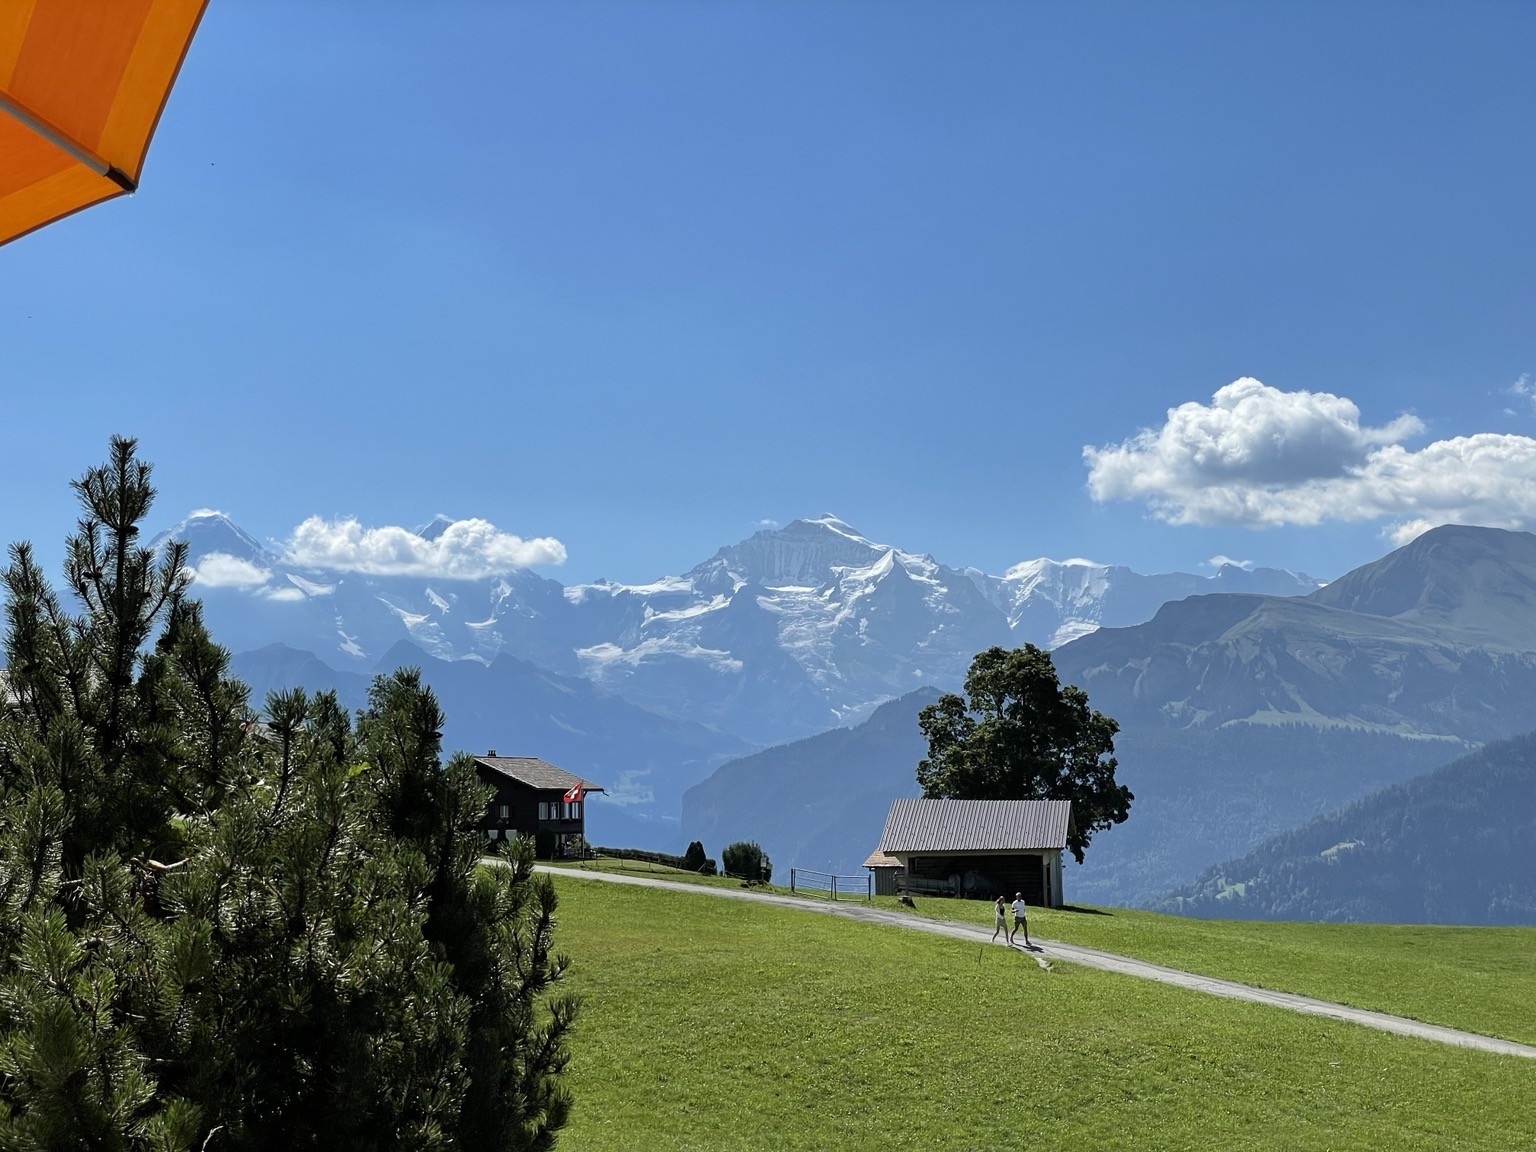 A Swiss mountain landscape